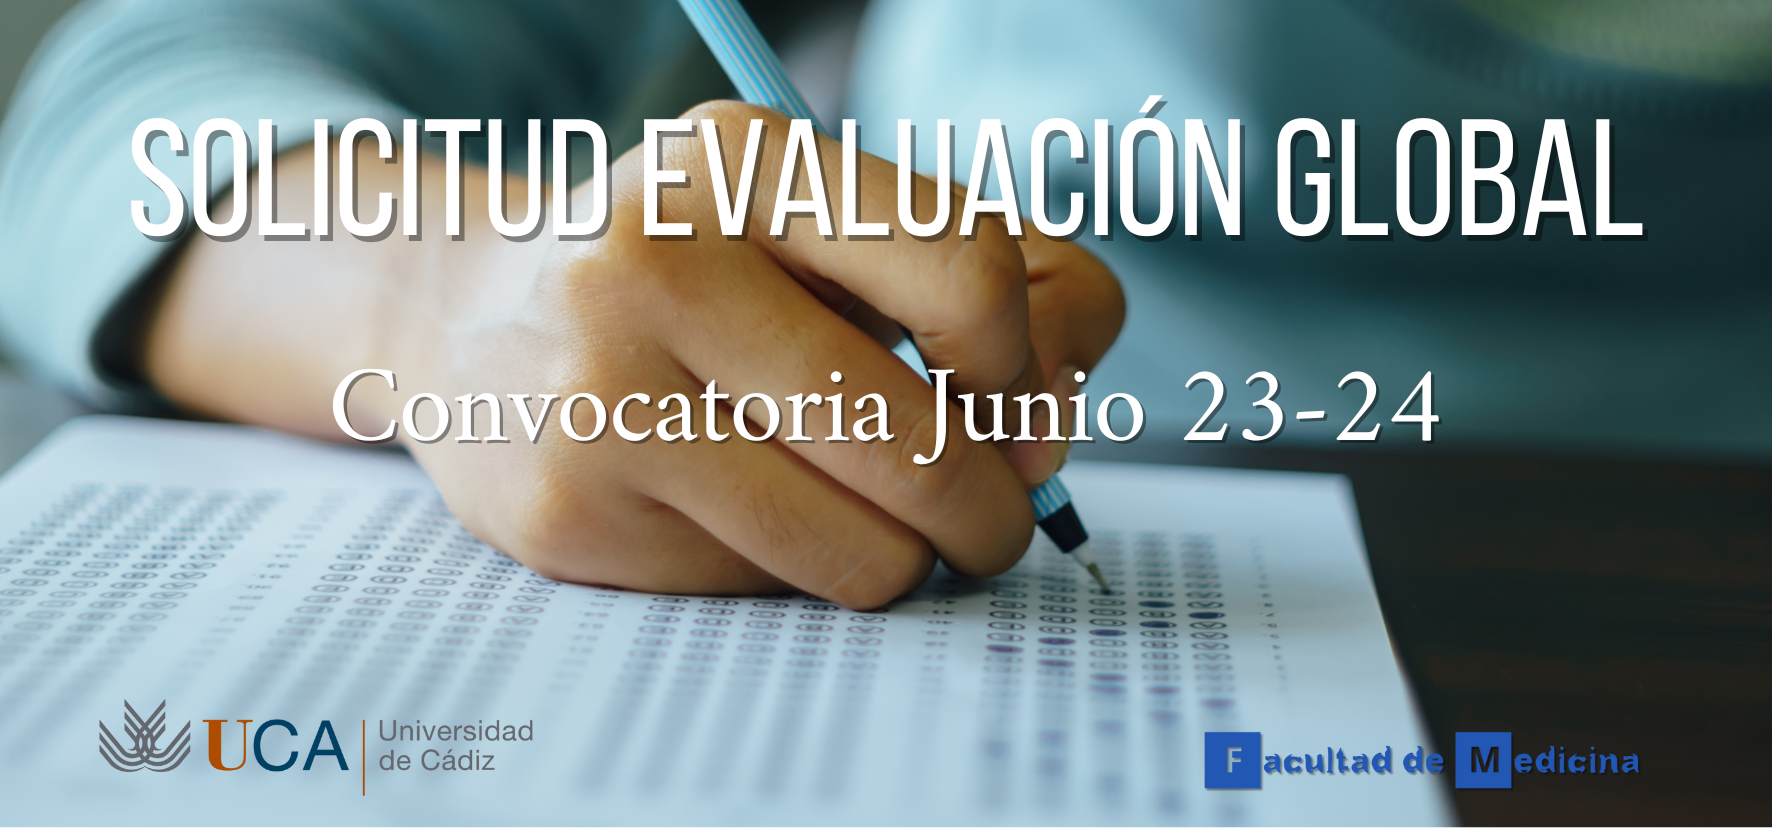 Se abre el plazo para poder solicitar la Evaluación Global en la convocatoria de exámenes de junio 23-24